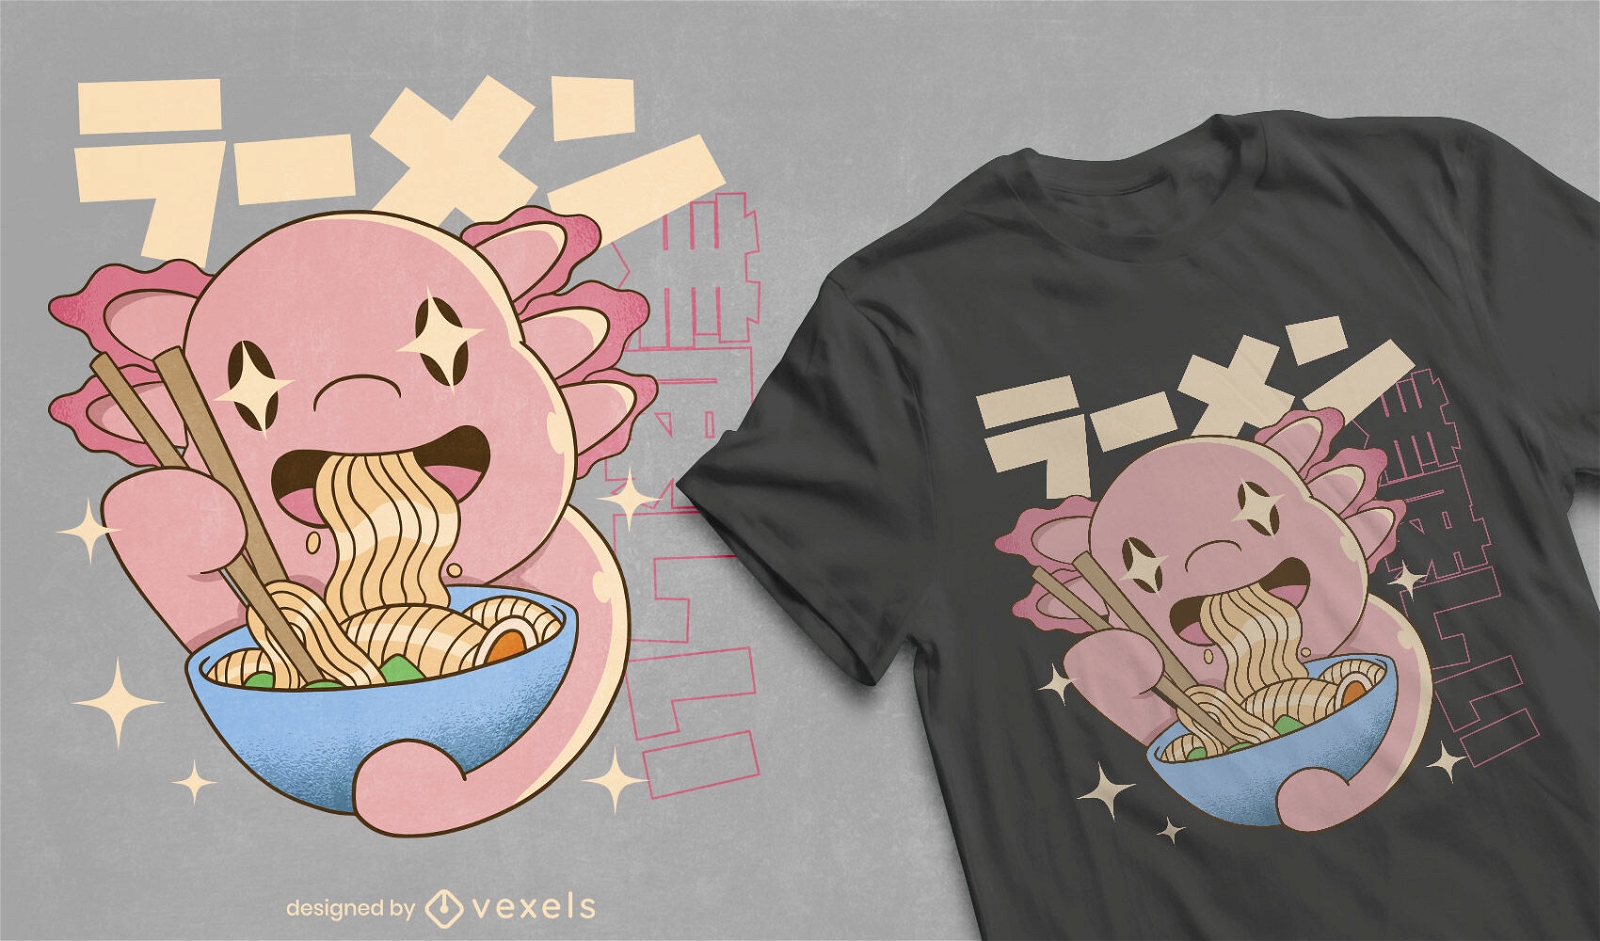 Diseño de camiseta de ajolote comiendo ramen.